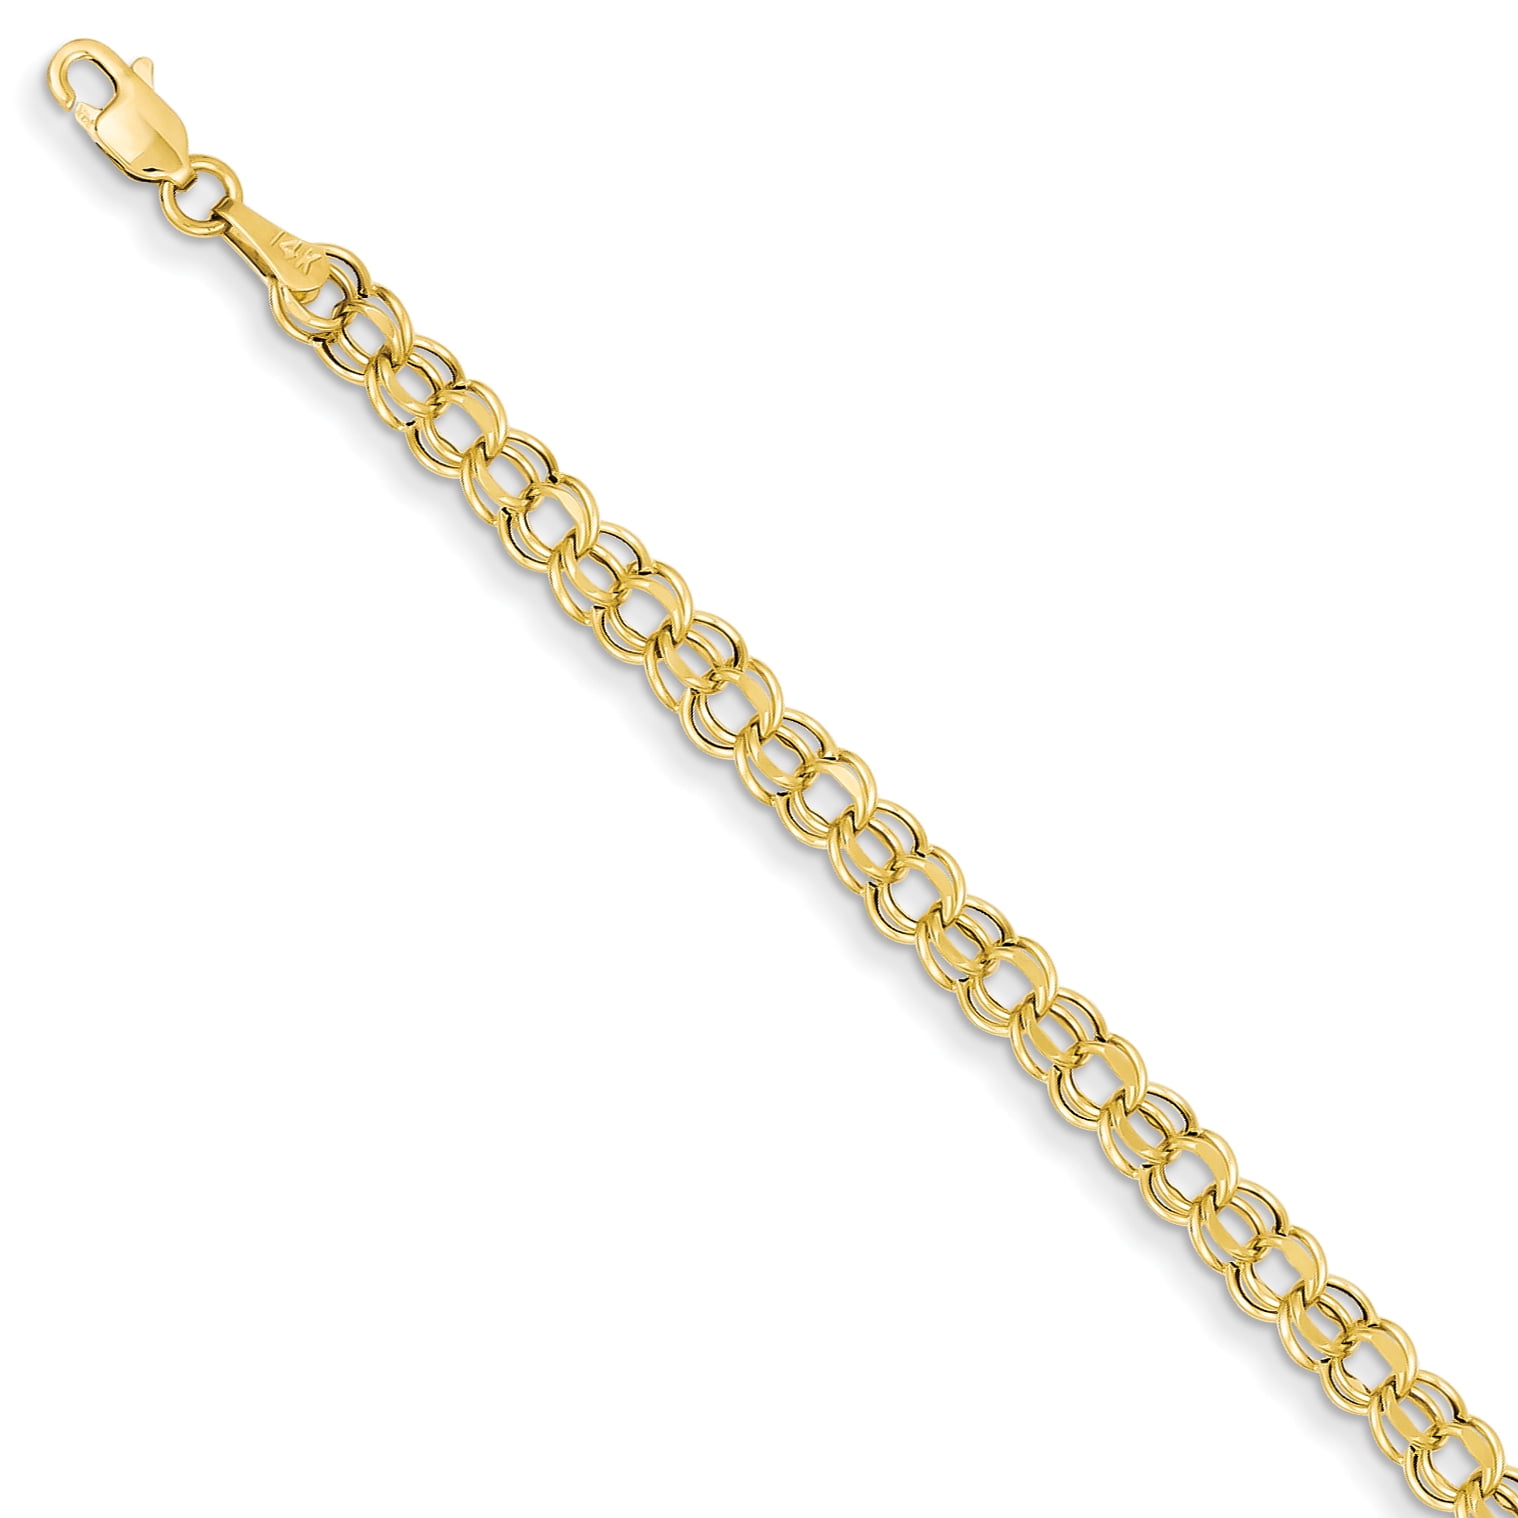 14k Yellow Gold Hobbies & Travel Keepsakes Charm Bracelet 8 1